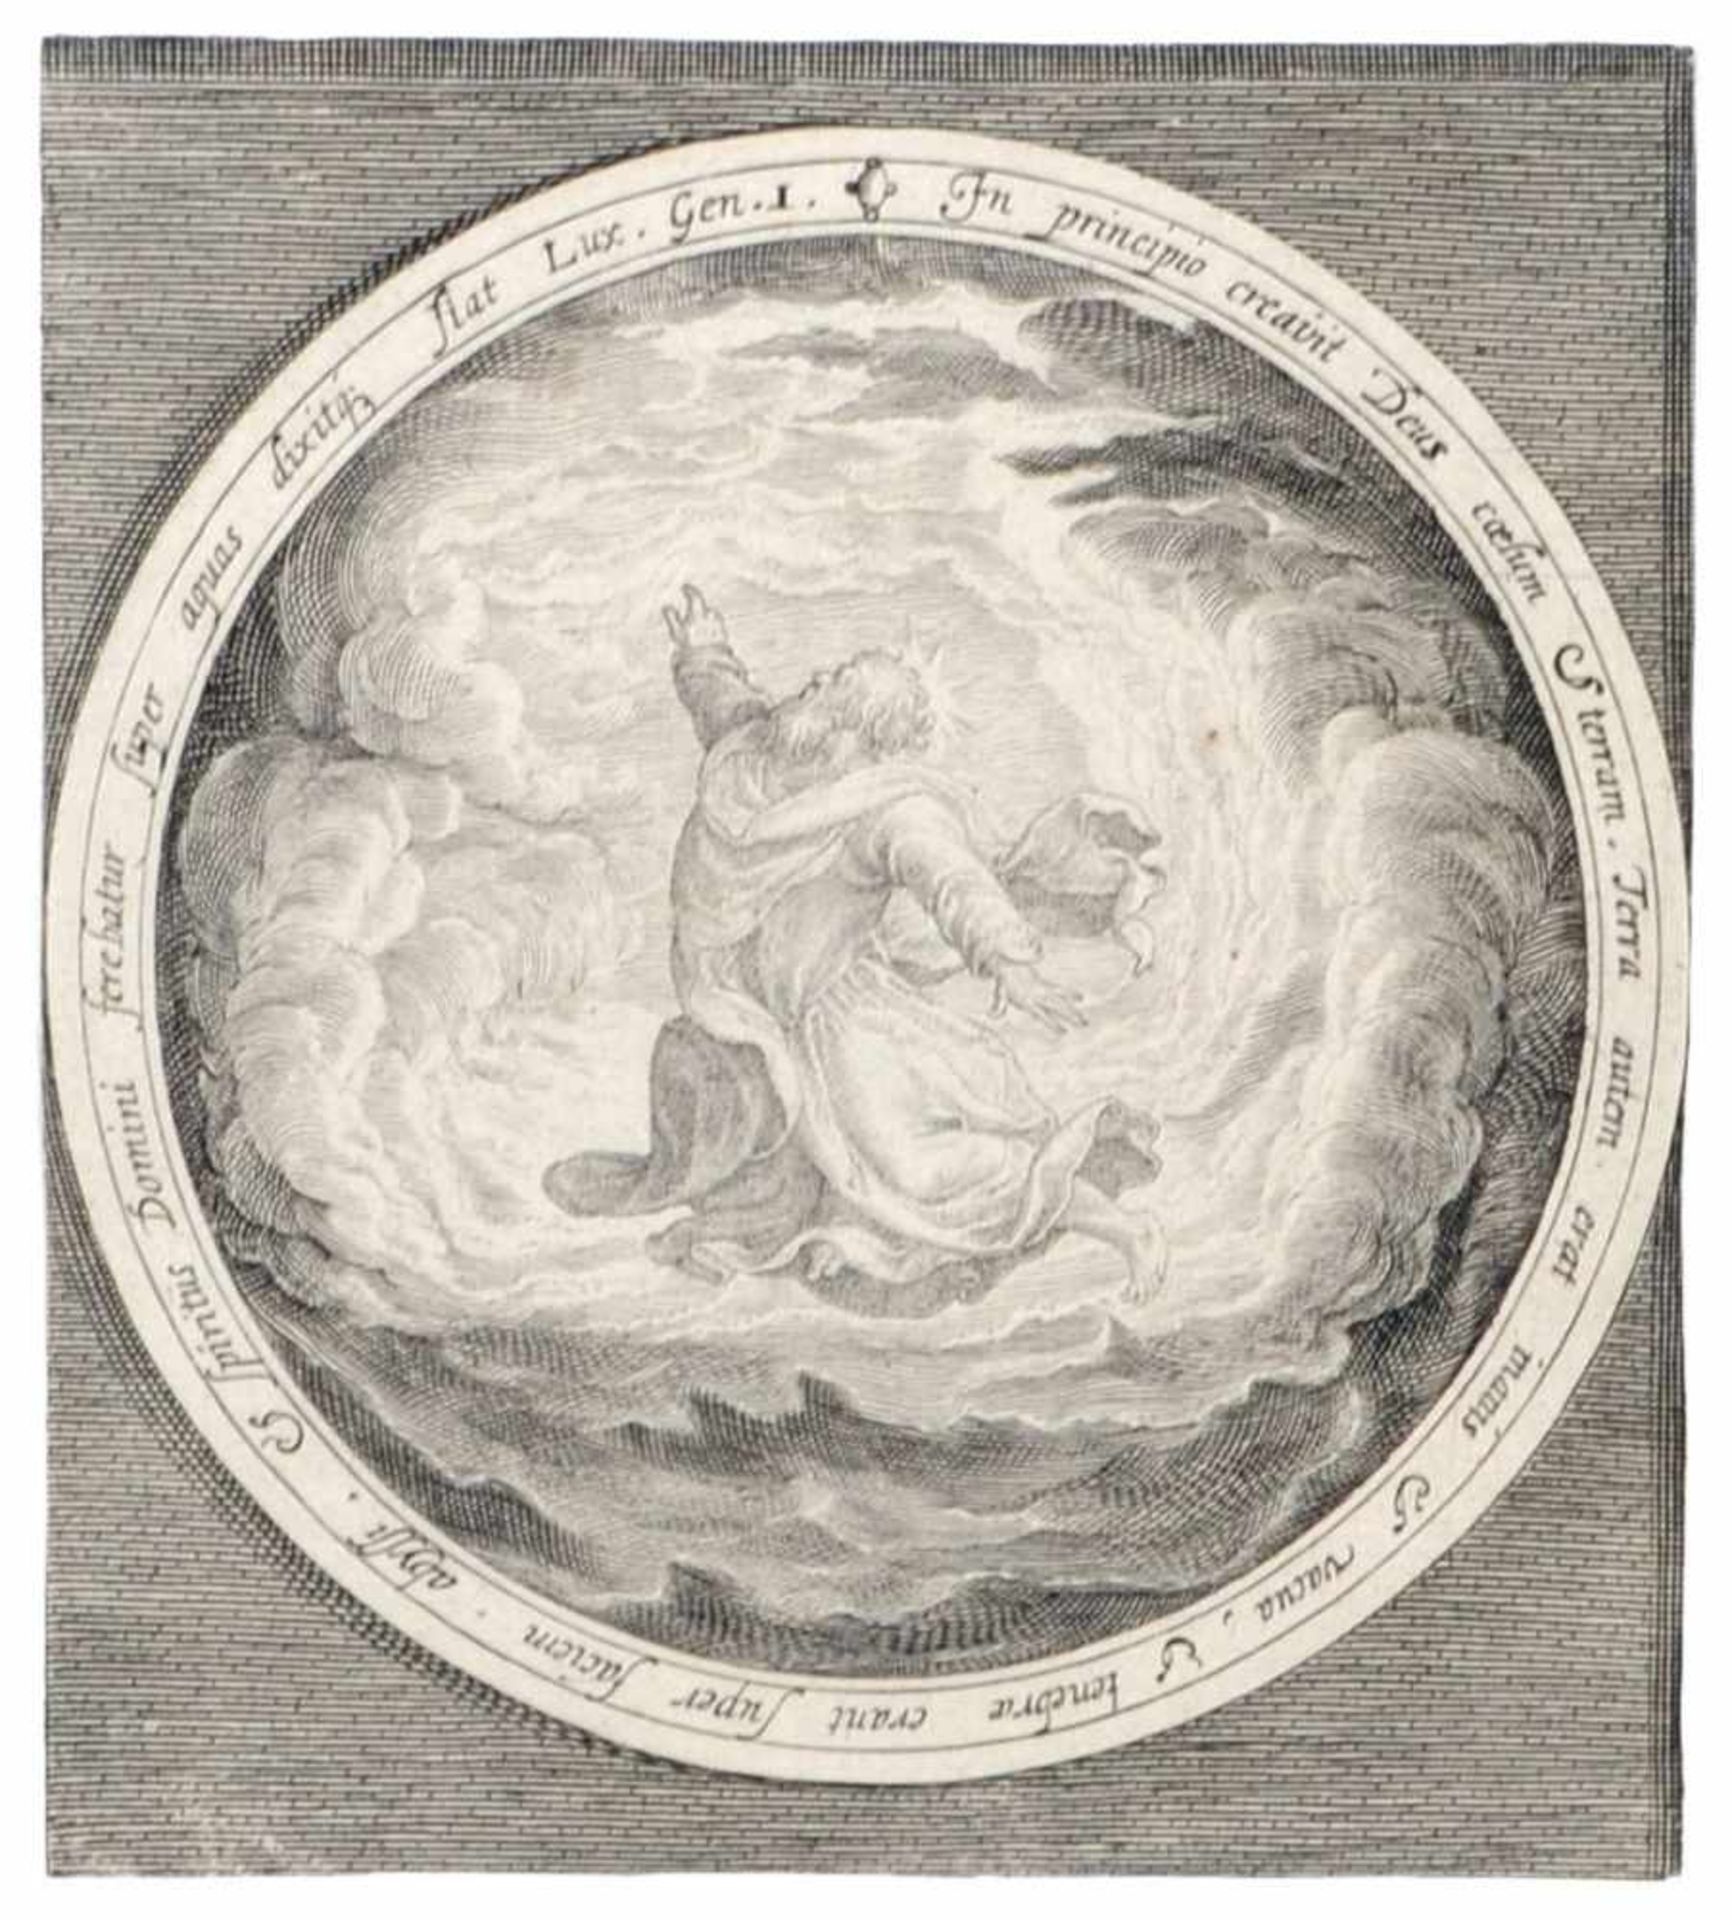 Nicolaes de Bruyn, Schöpfungsgeschichte nach dem 1. Buch Mose. 1. H. 17. Jh.Nicolaes de Bruyn 1571